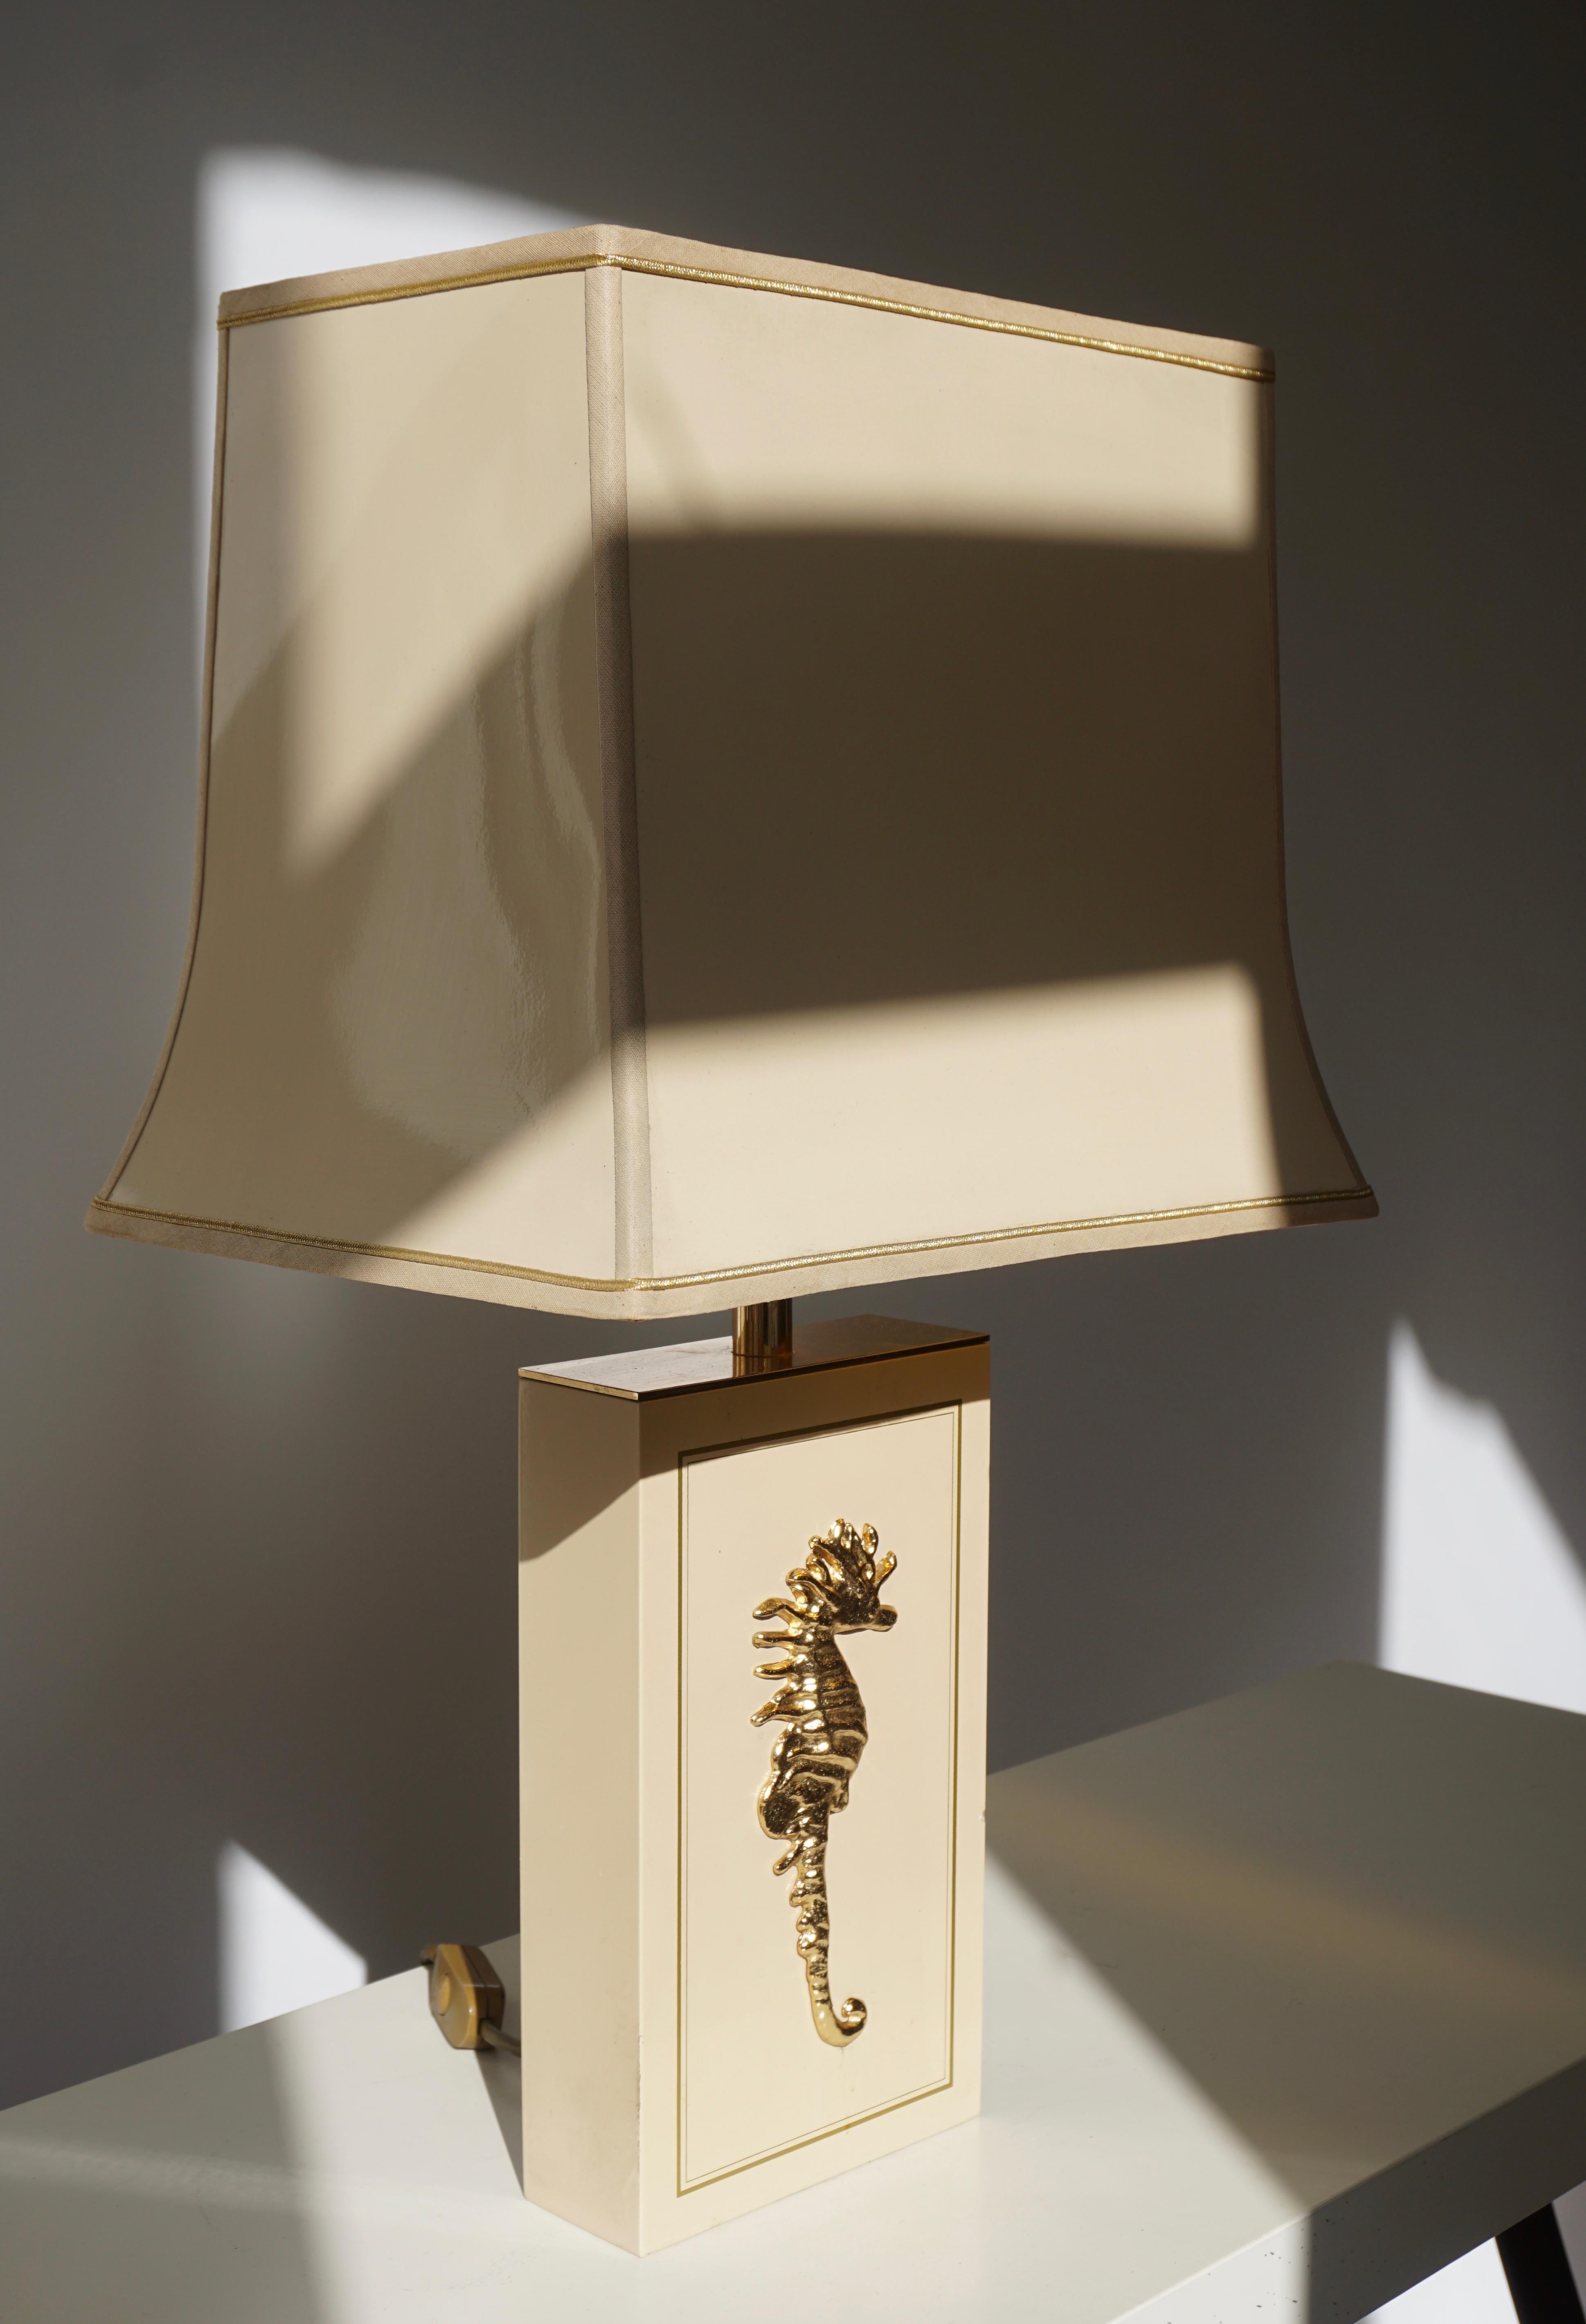 Deux lampes de table belges avec un hippocampe en laiton.
Mesures : Hauteur 61 cm.
Largeur 35 cm.
Profondeur 25 cm.